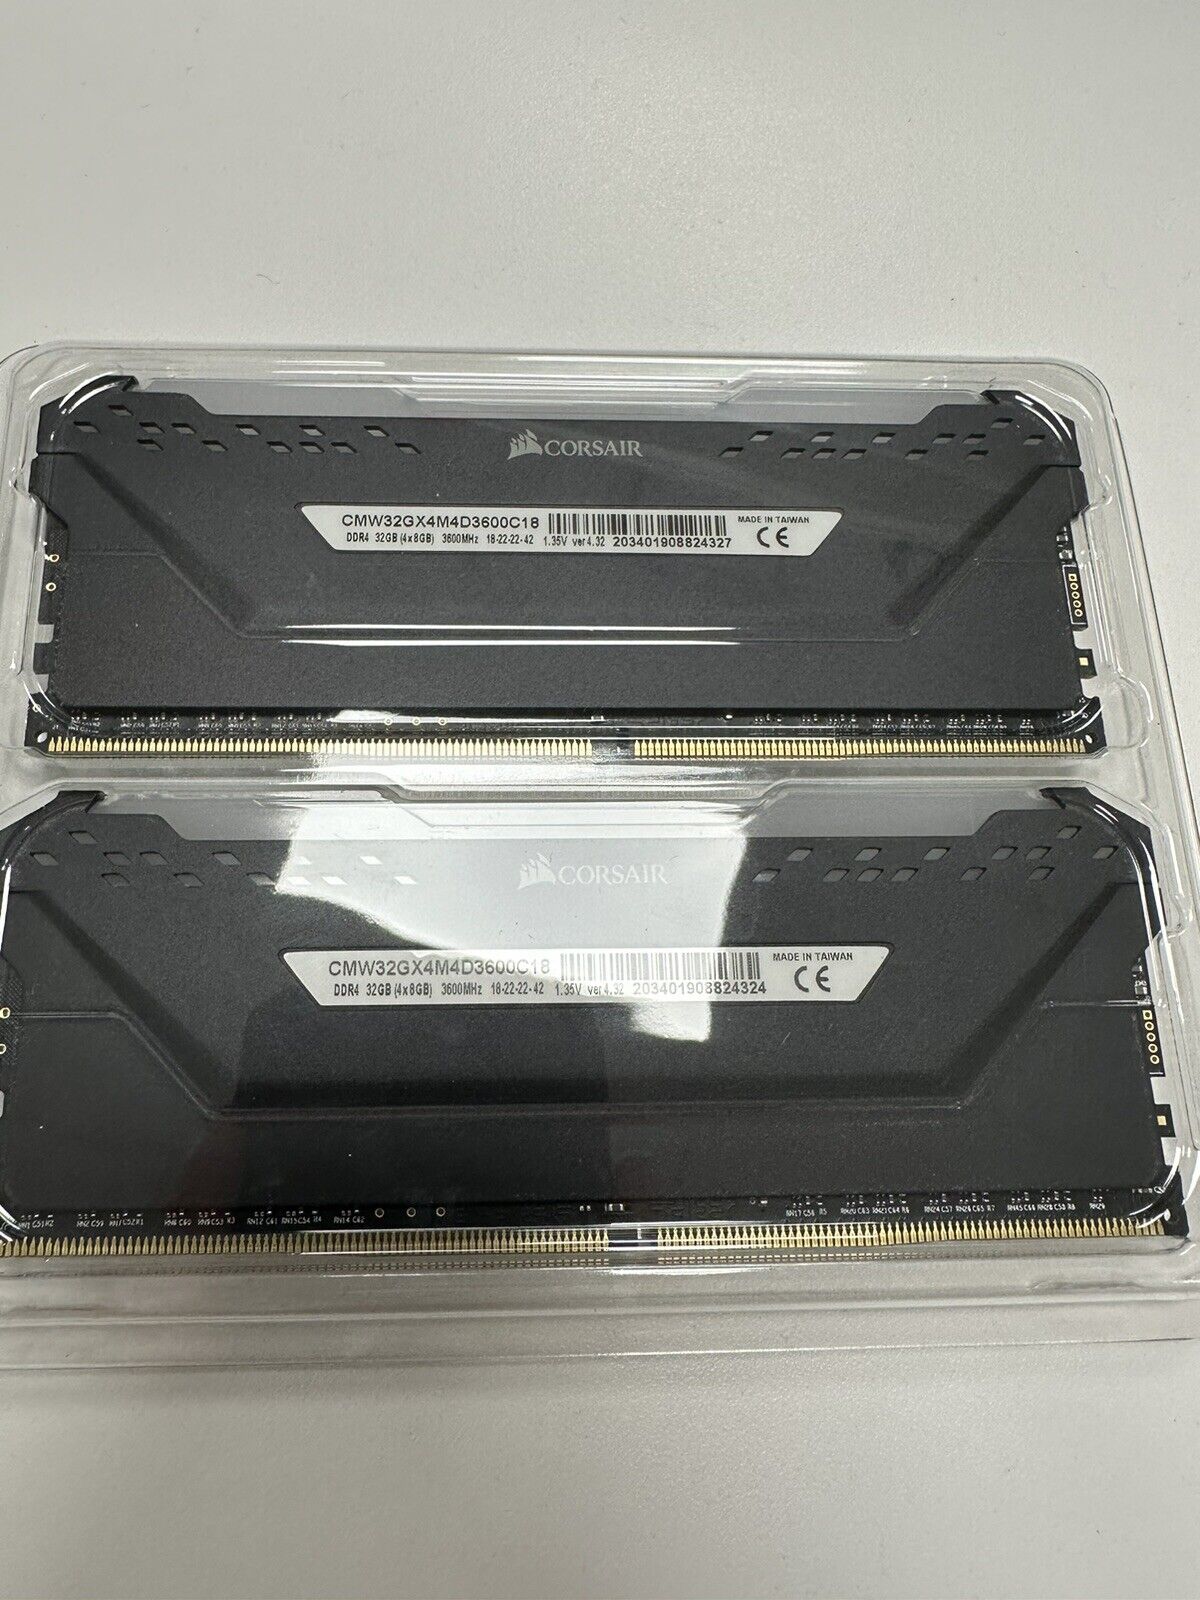 Corsair Vengeance RGB Pro 16GB (2 x 8GB) PC4-24000 (DDR4-3000) Memory